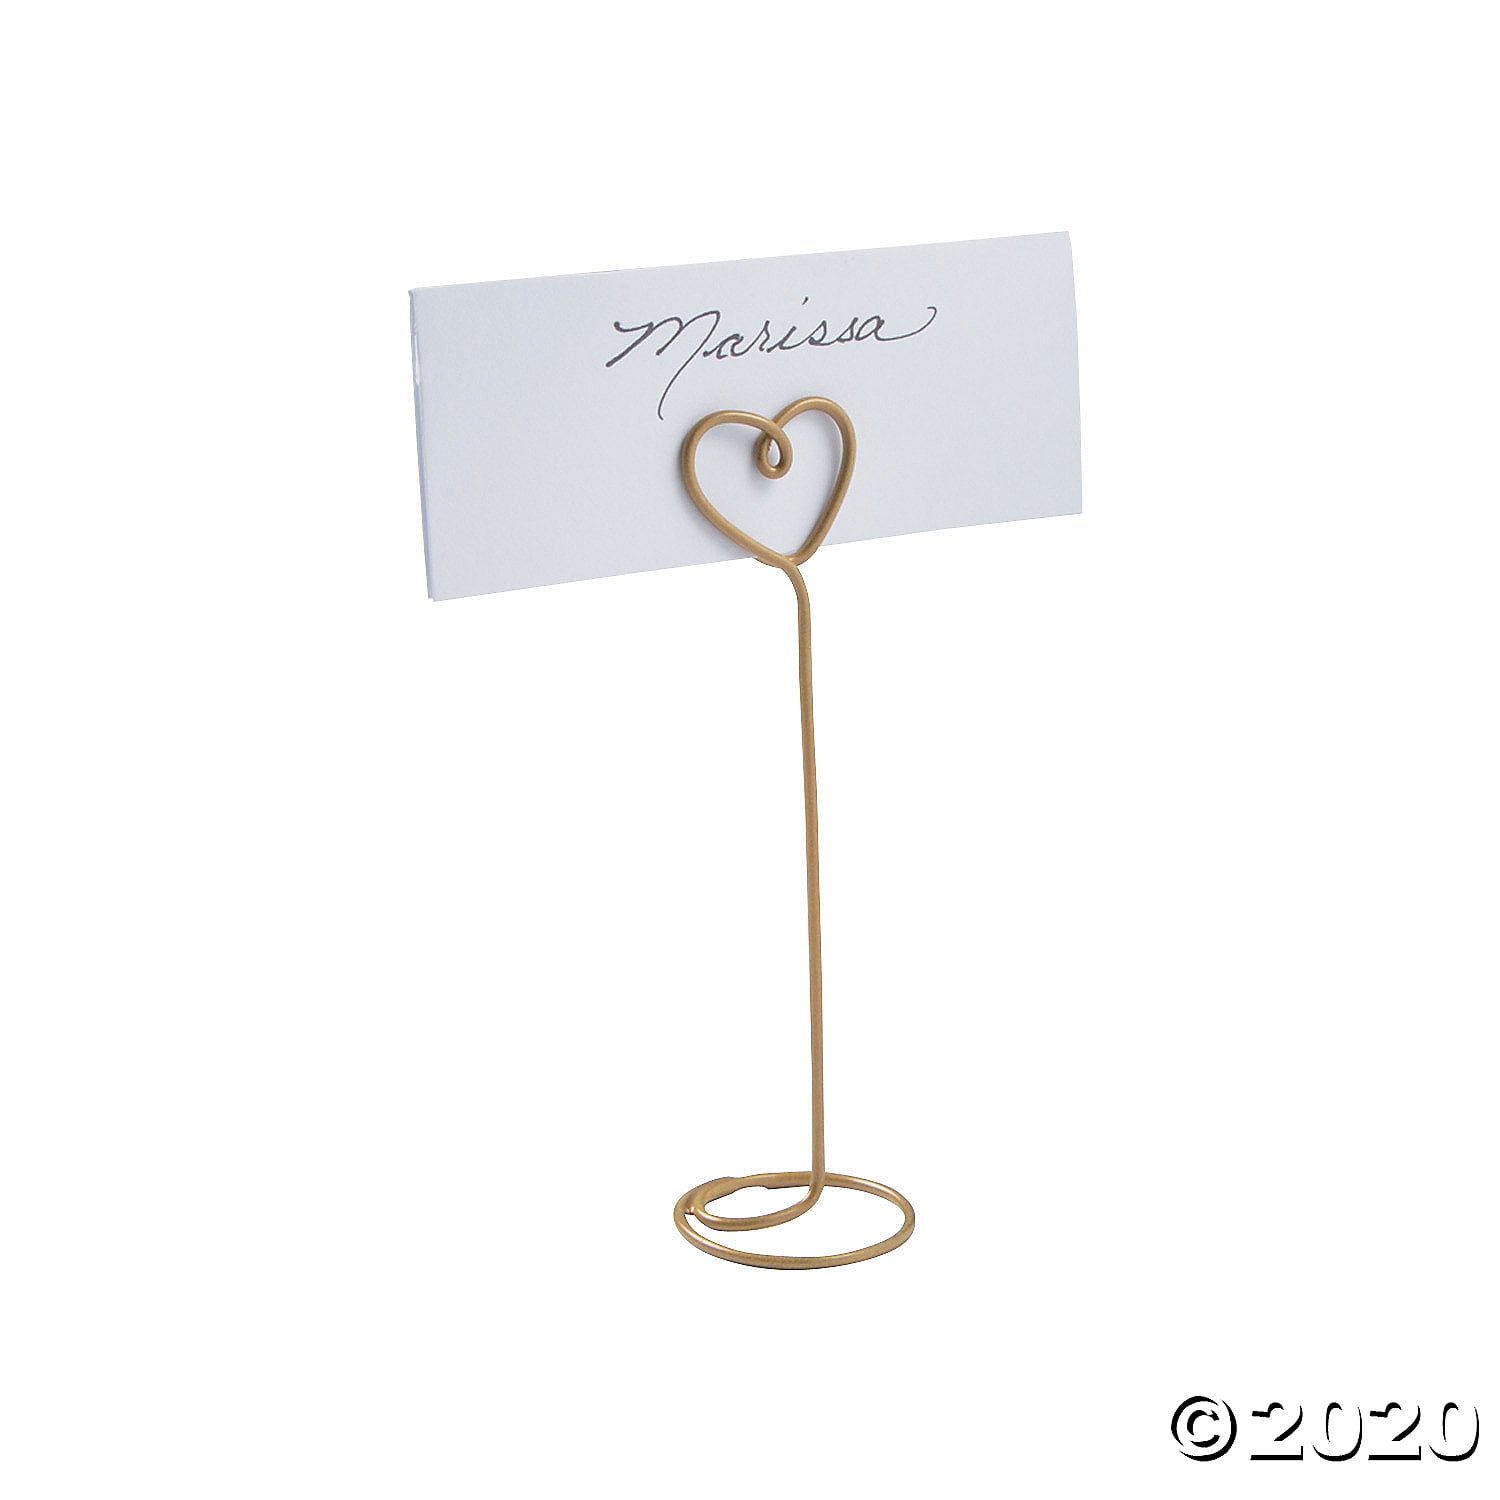 Details about   Square Card Cards Holder Roses Heart Place Card Wedding Rose Heart Menu Card Holder er data-mtsrclang=en-US href=# onclick=return false; 							show original title 